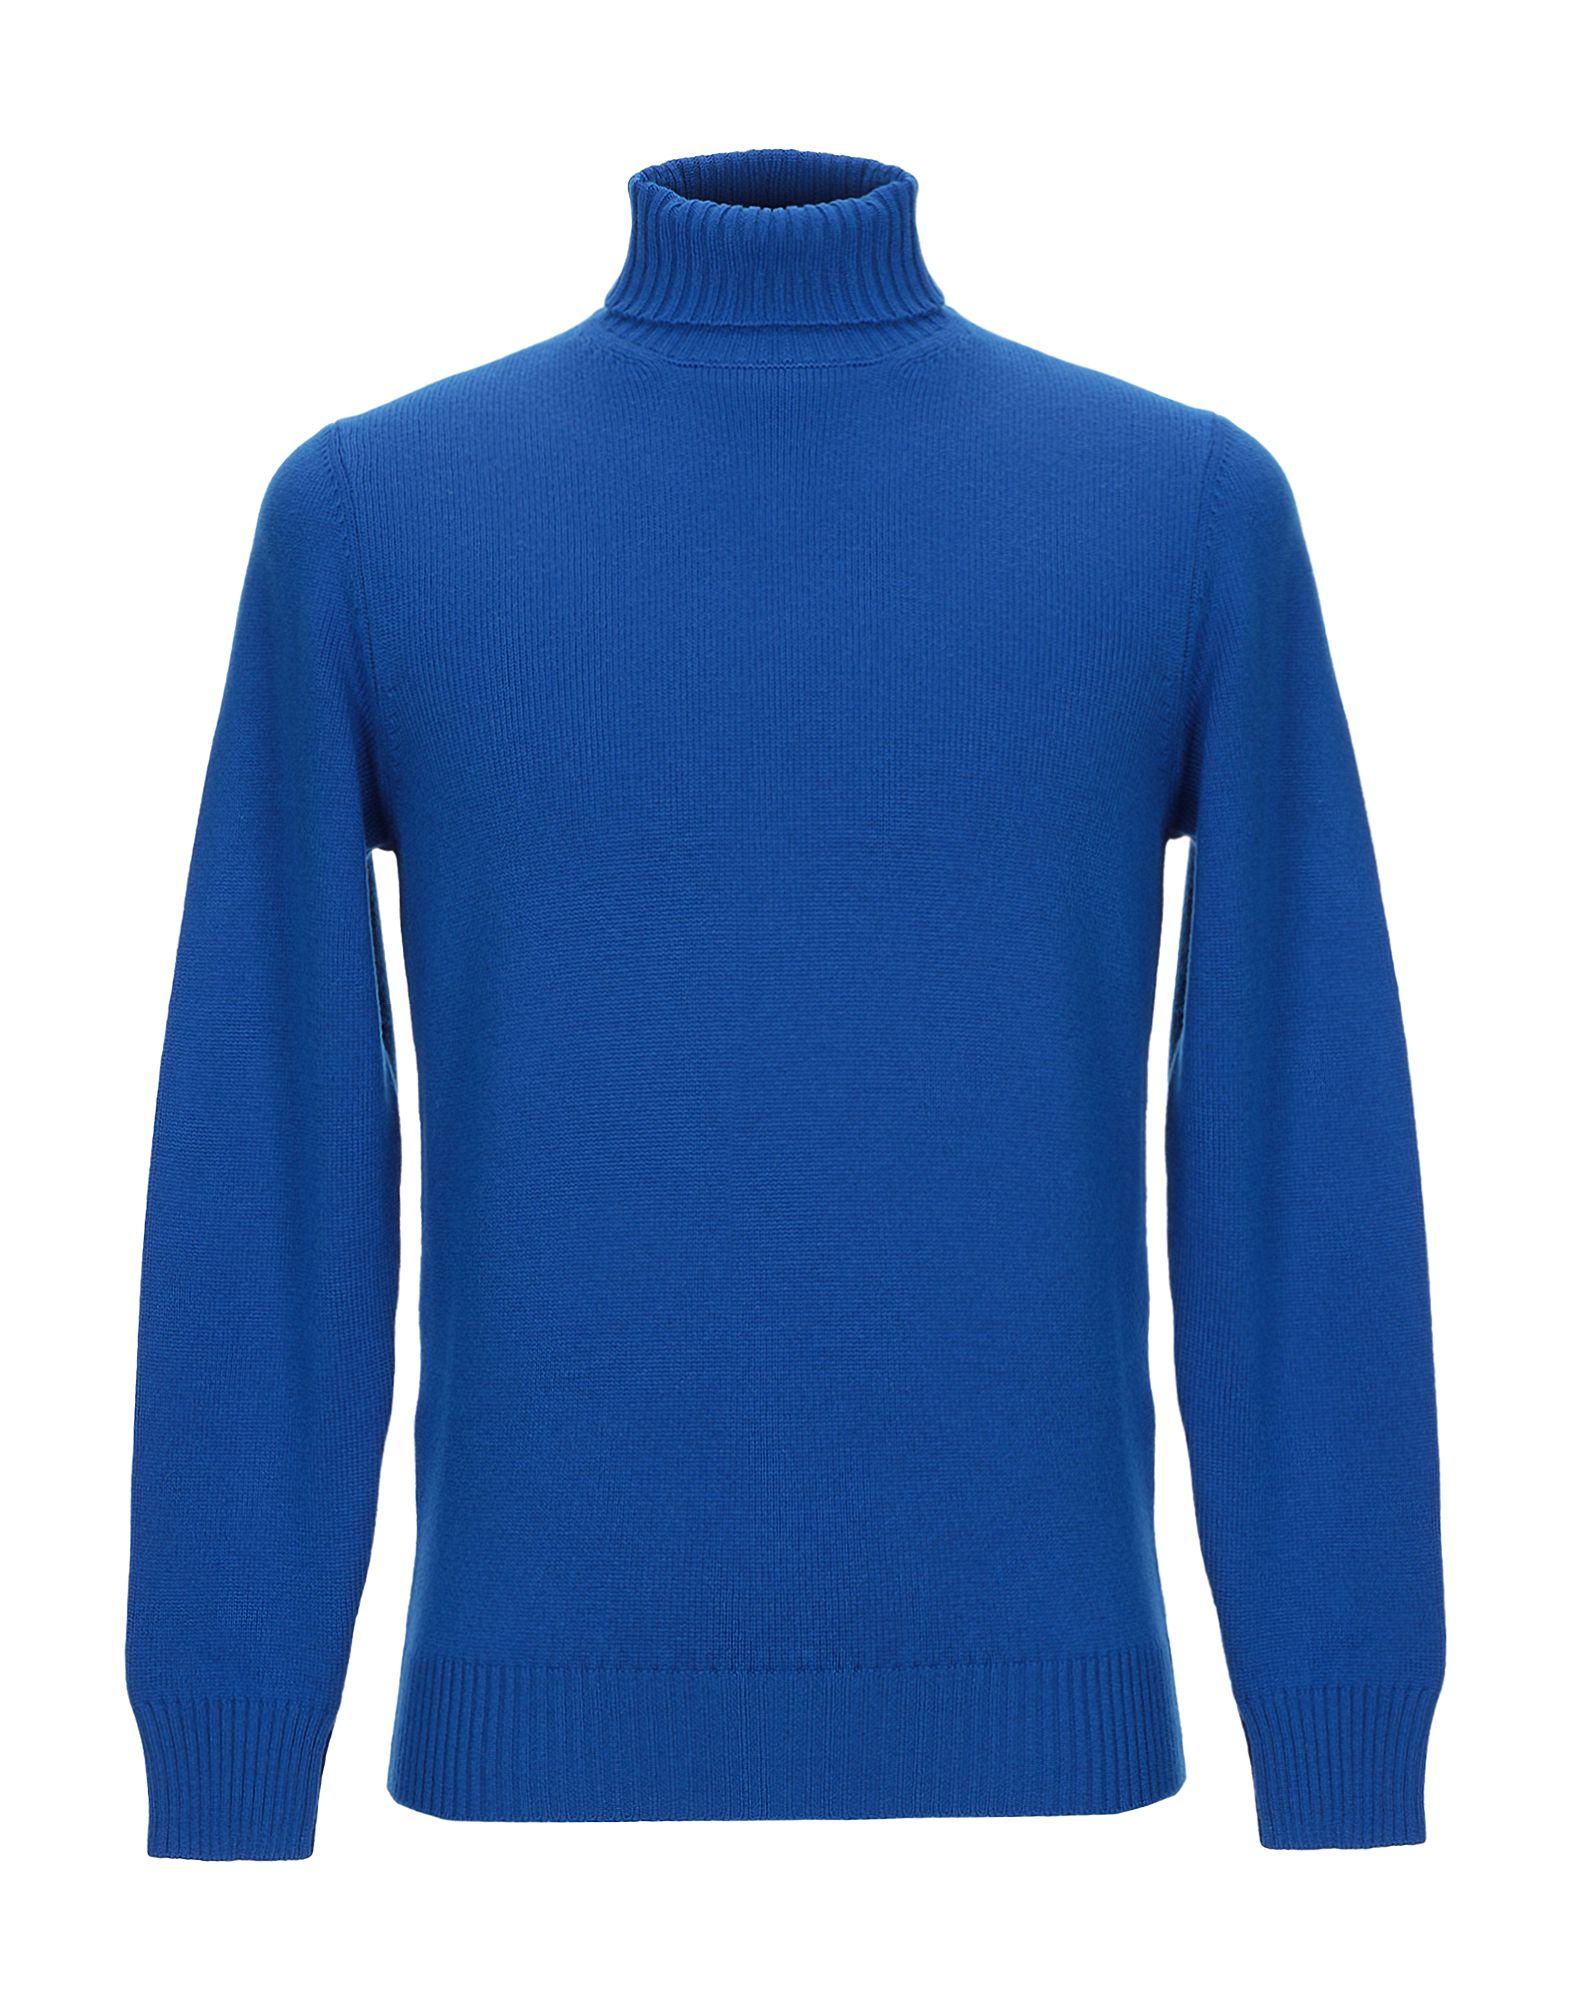 Drumohr Wool Turtleneck in Bright Blue (Blue) for Men - Save 79% - Lyst